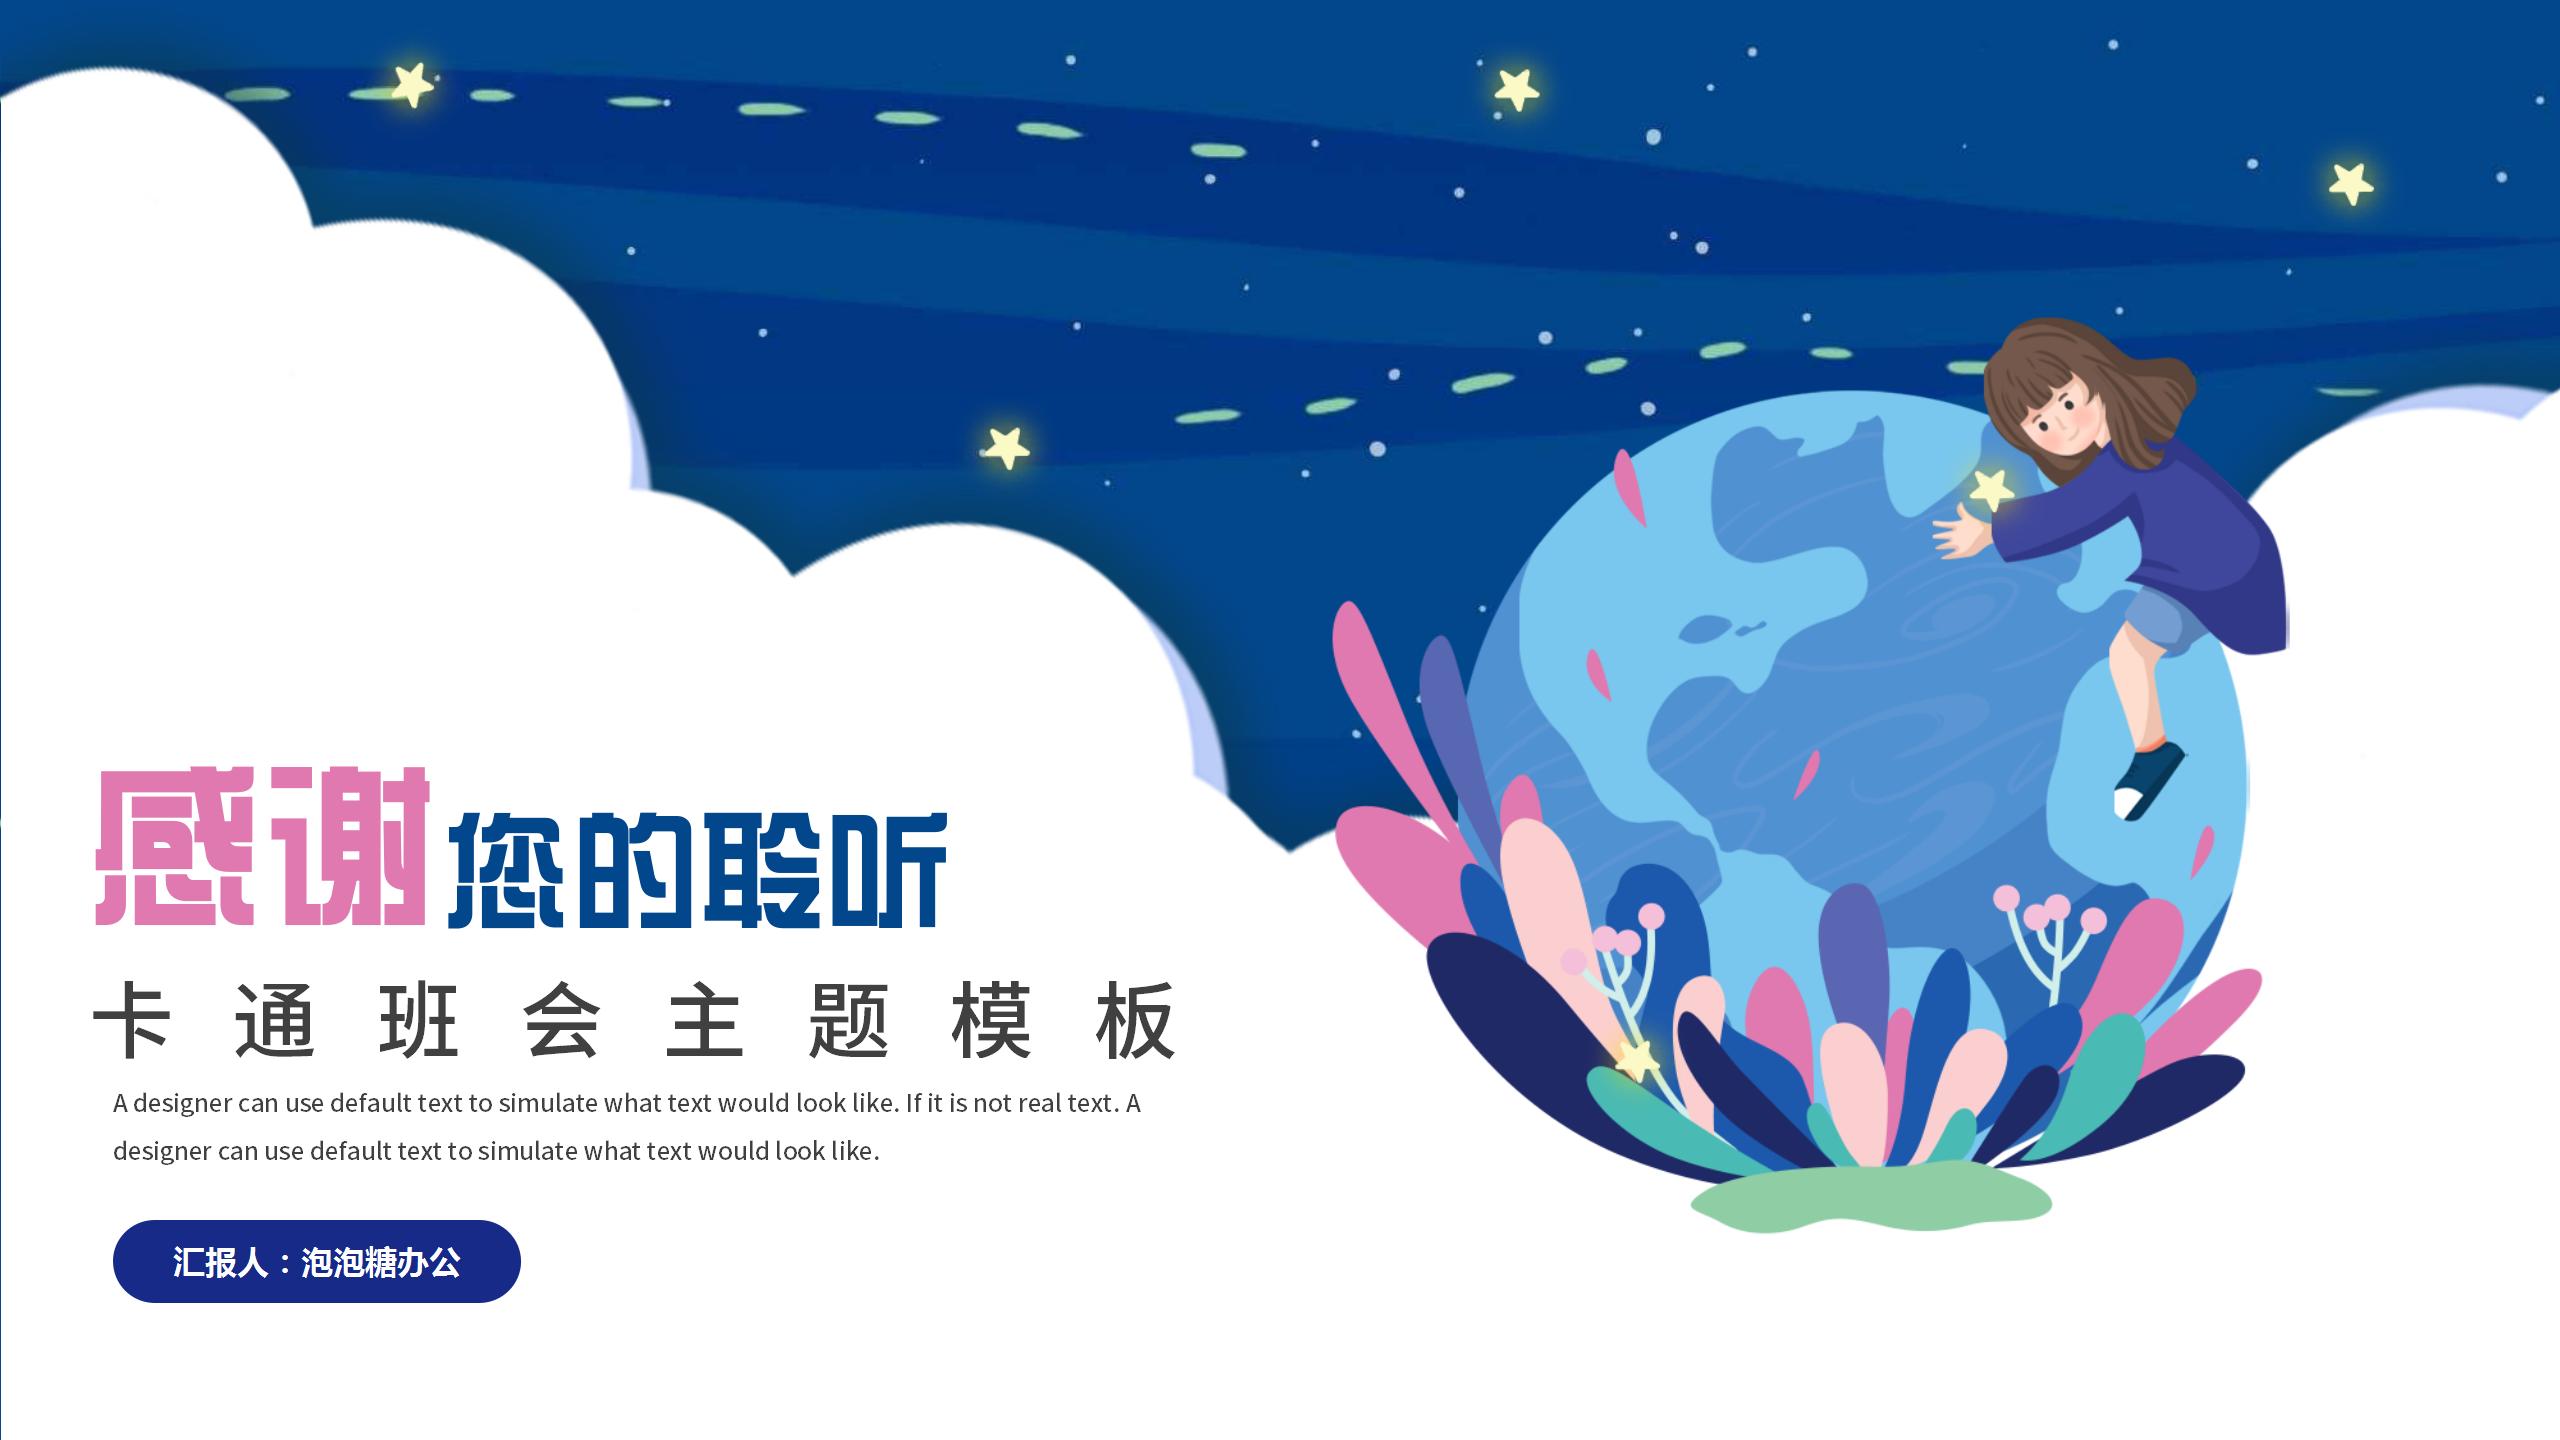 梦幻卡通世界地球日主题班会世界地球日主题活动方案PPT模板